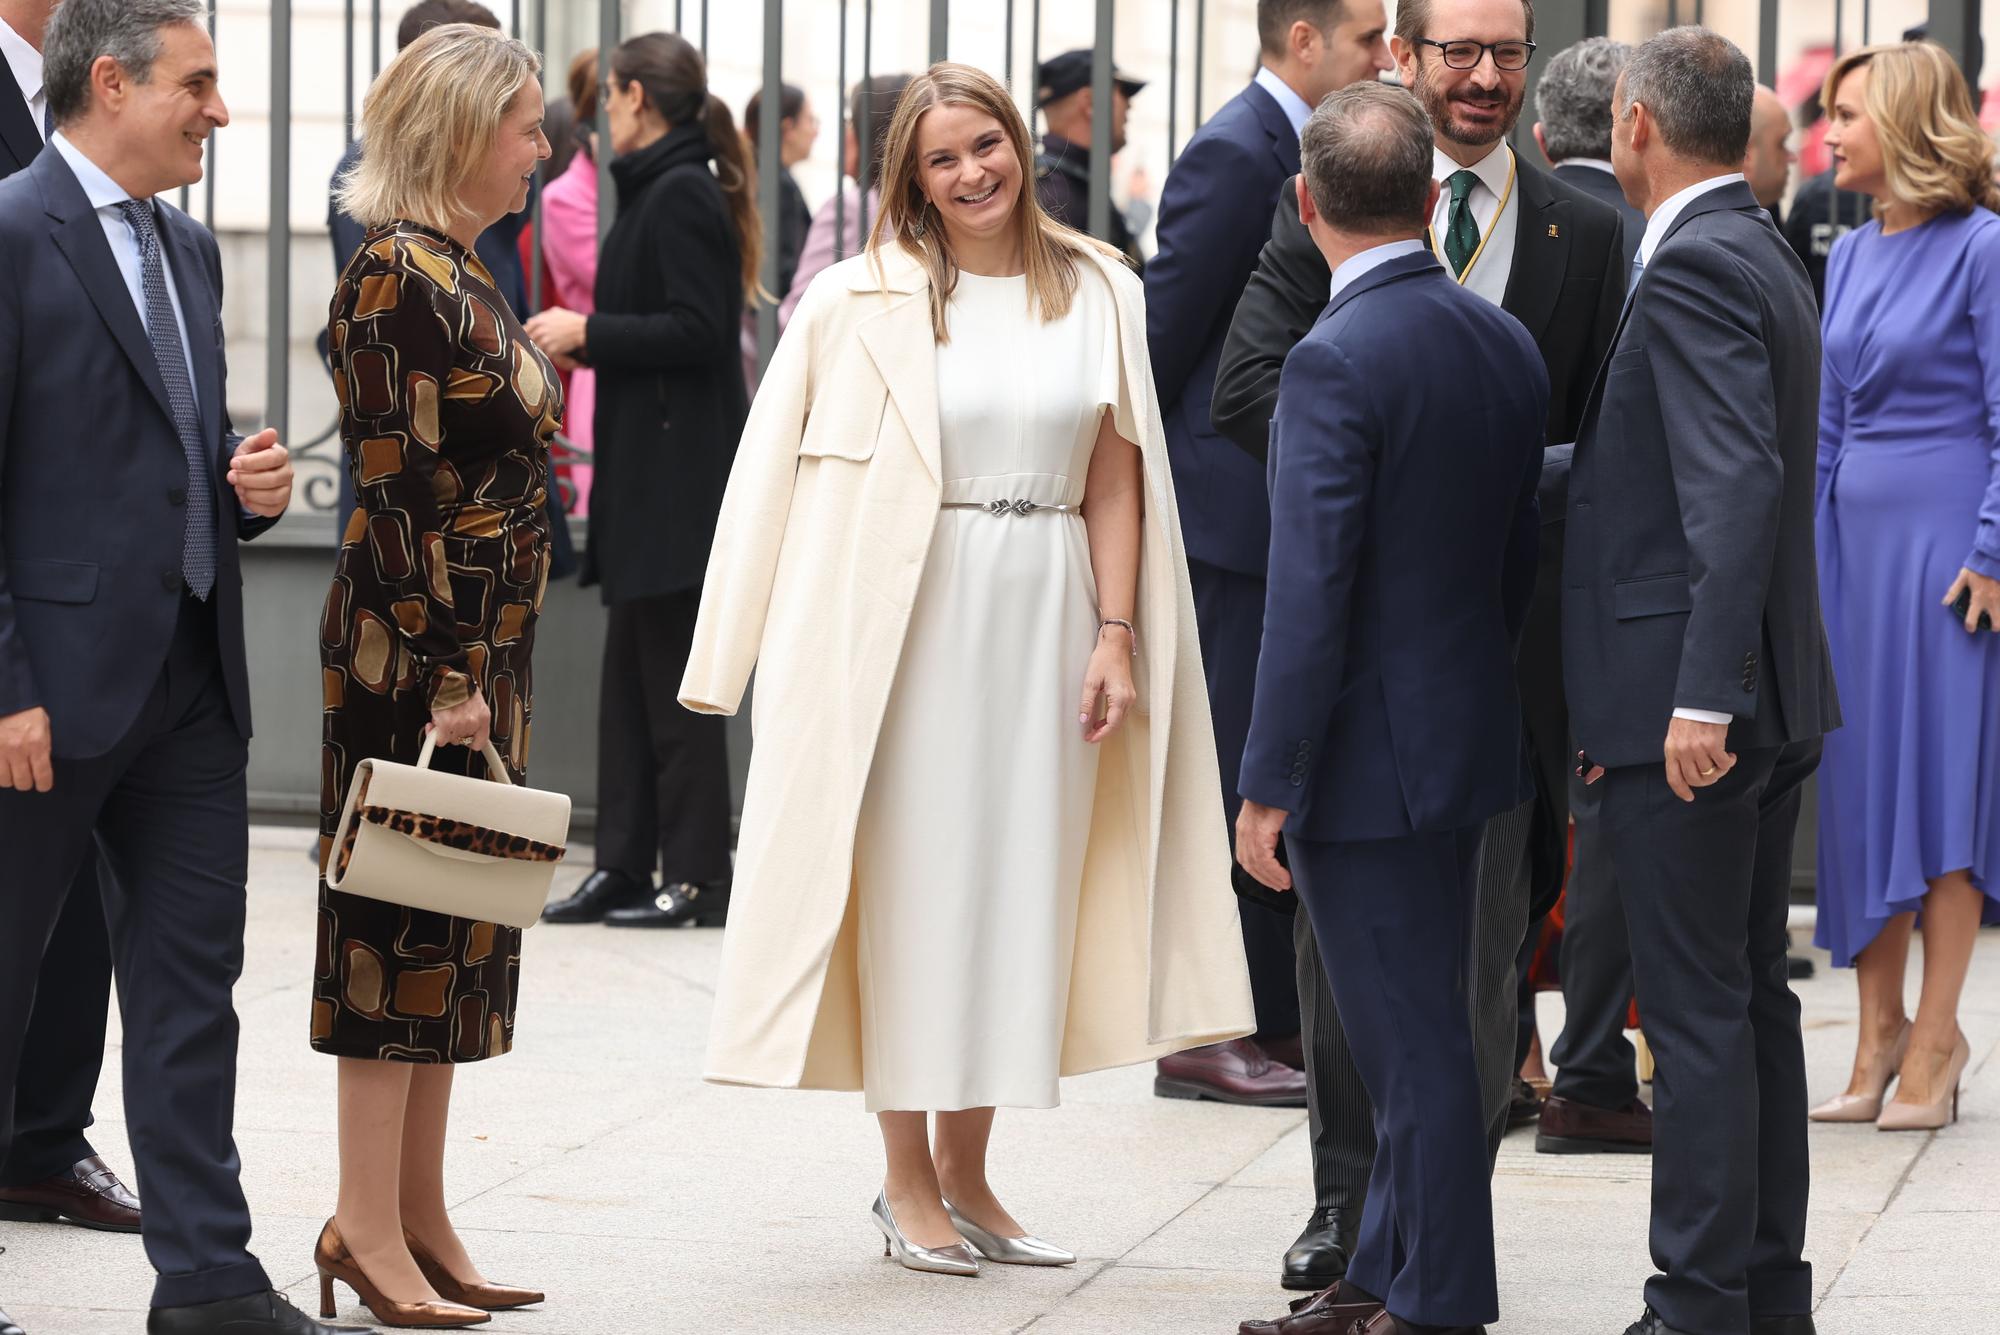 La princesa abre hoy una nueva página en la monarquía en España con su juramento